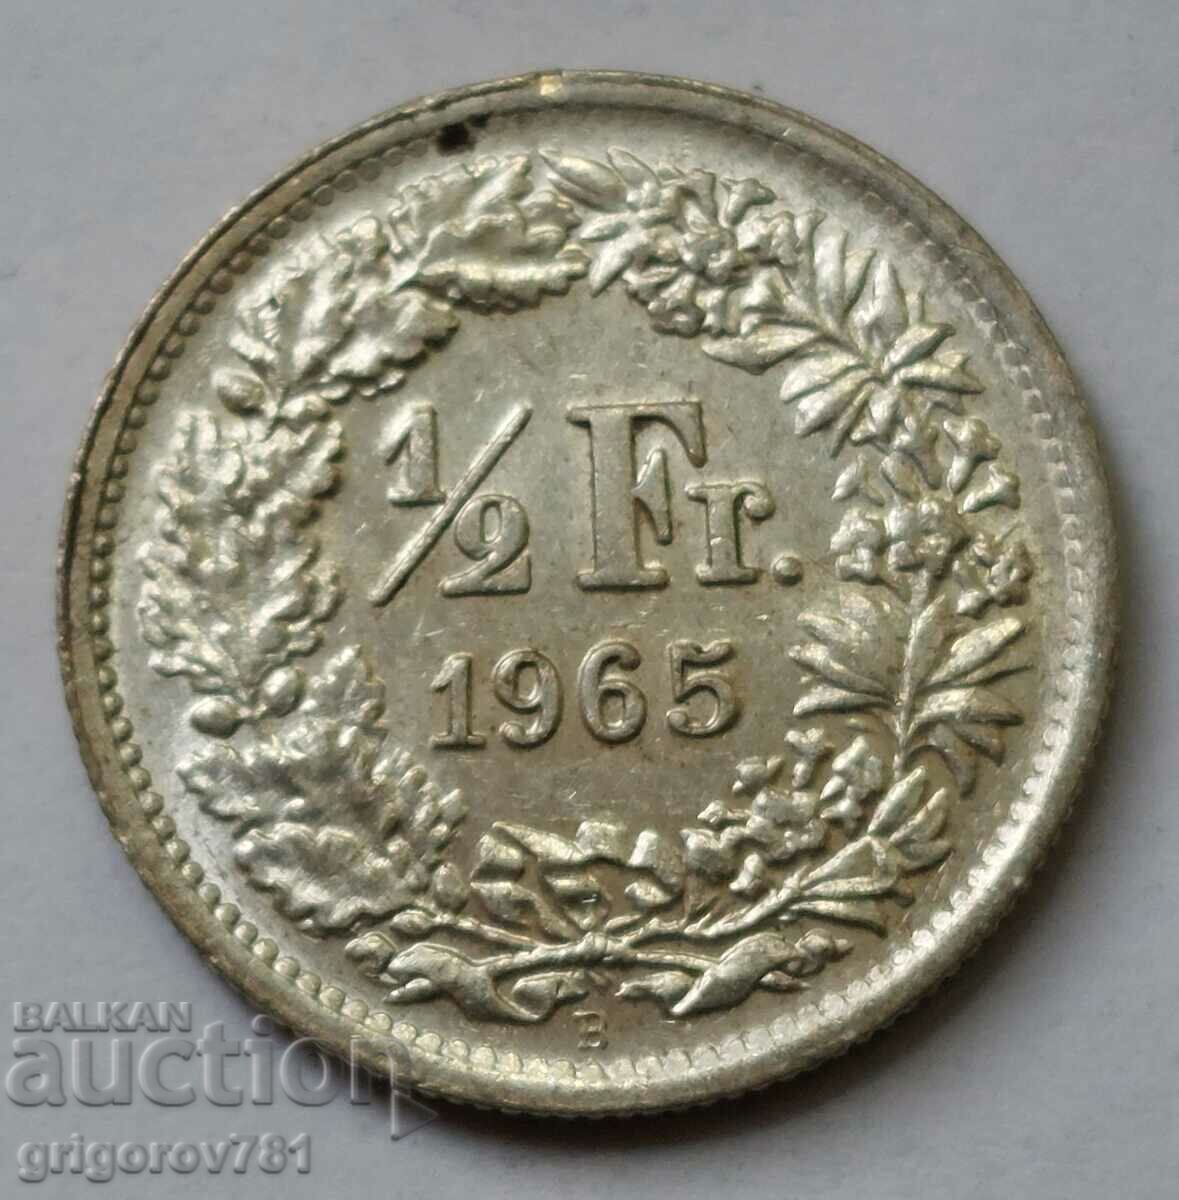 Ασημένιο φράγκο 1/2 Ελβετία 1965 Β - Ασημένιο νόμισμα #24